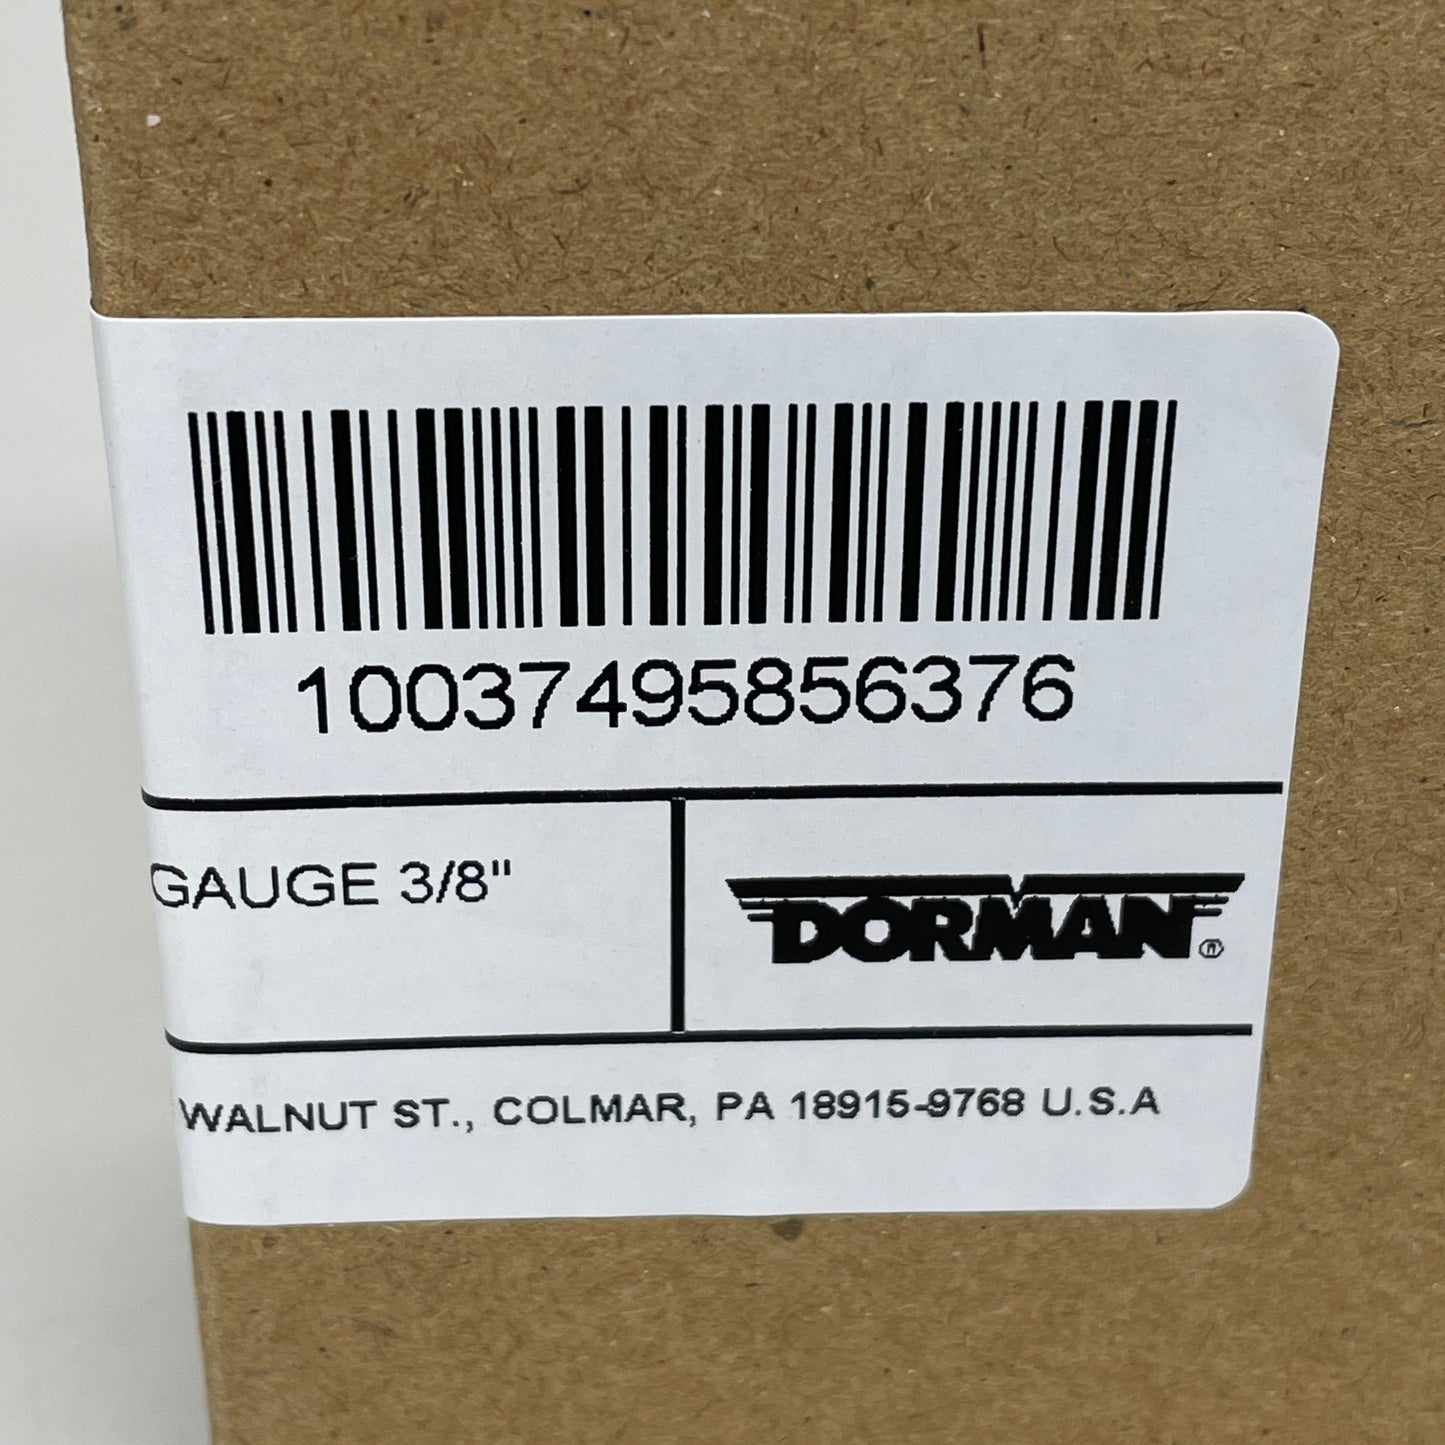 DORMAN (5-PACK) Copper Ring Lug 4 Gauge 3/8" 85637